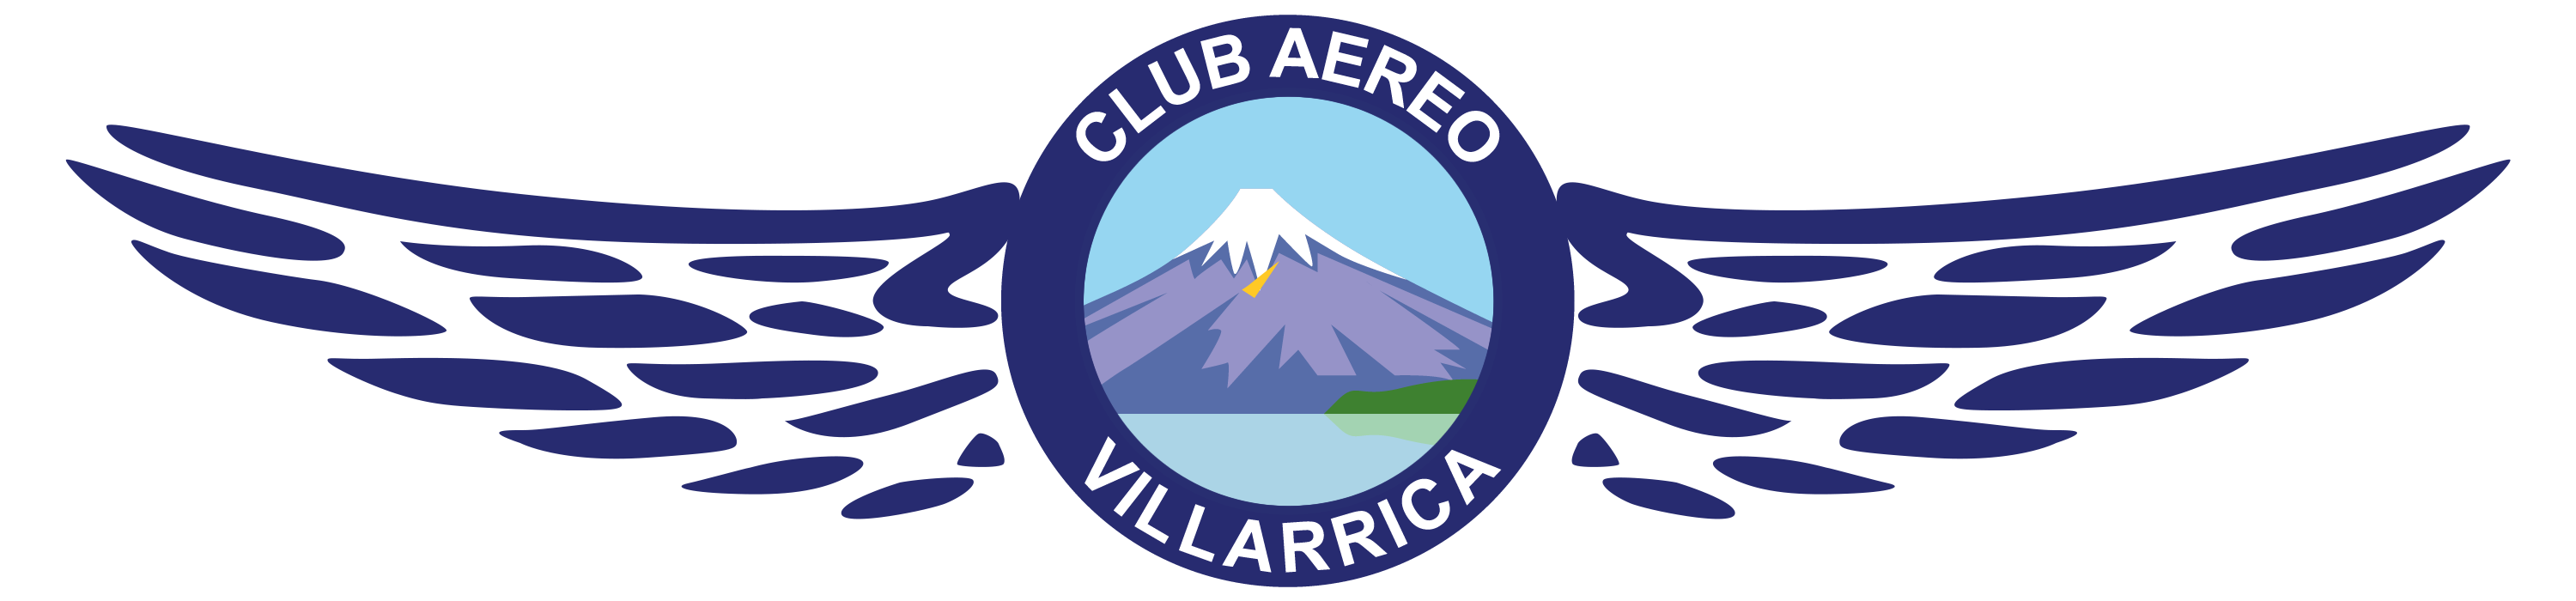 Club aéreo de Villarrica | Aeródromo de Villarrica - SCVI